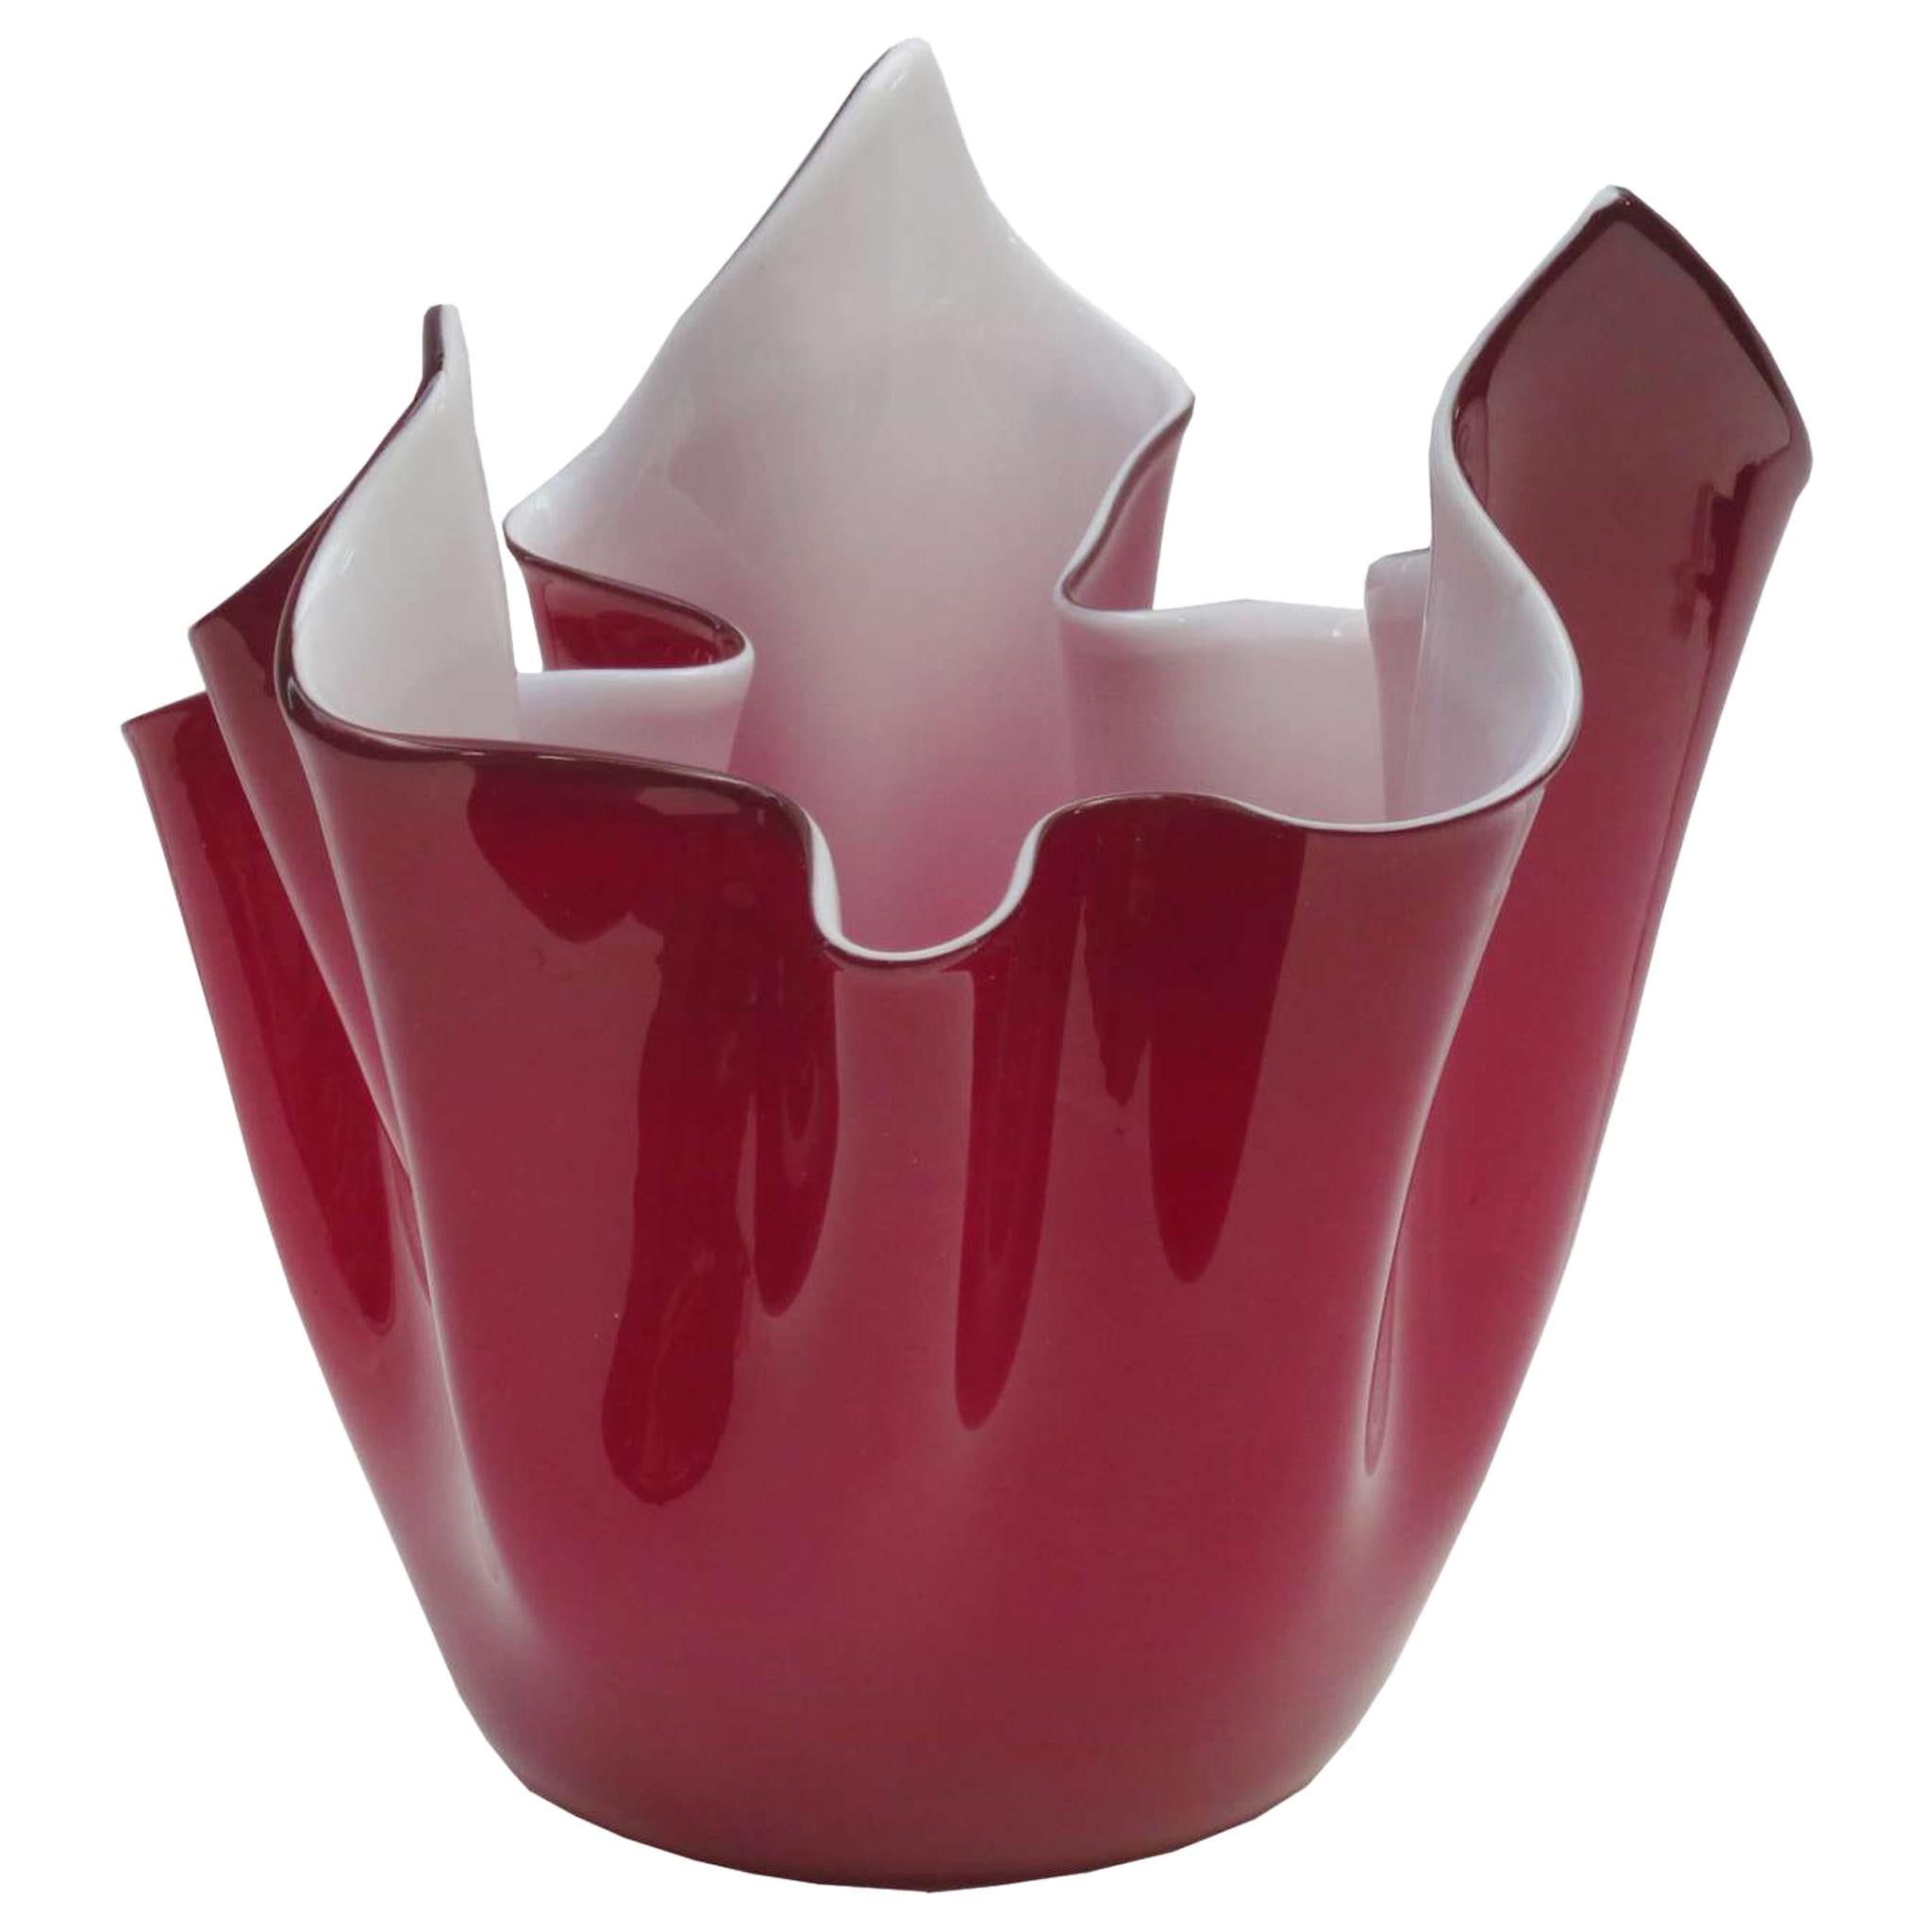 Venini "Fazzoletto" Art Glass Vase